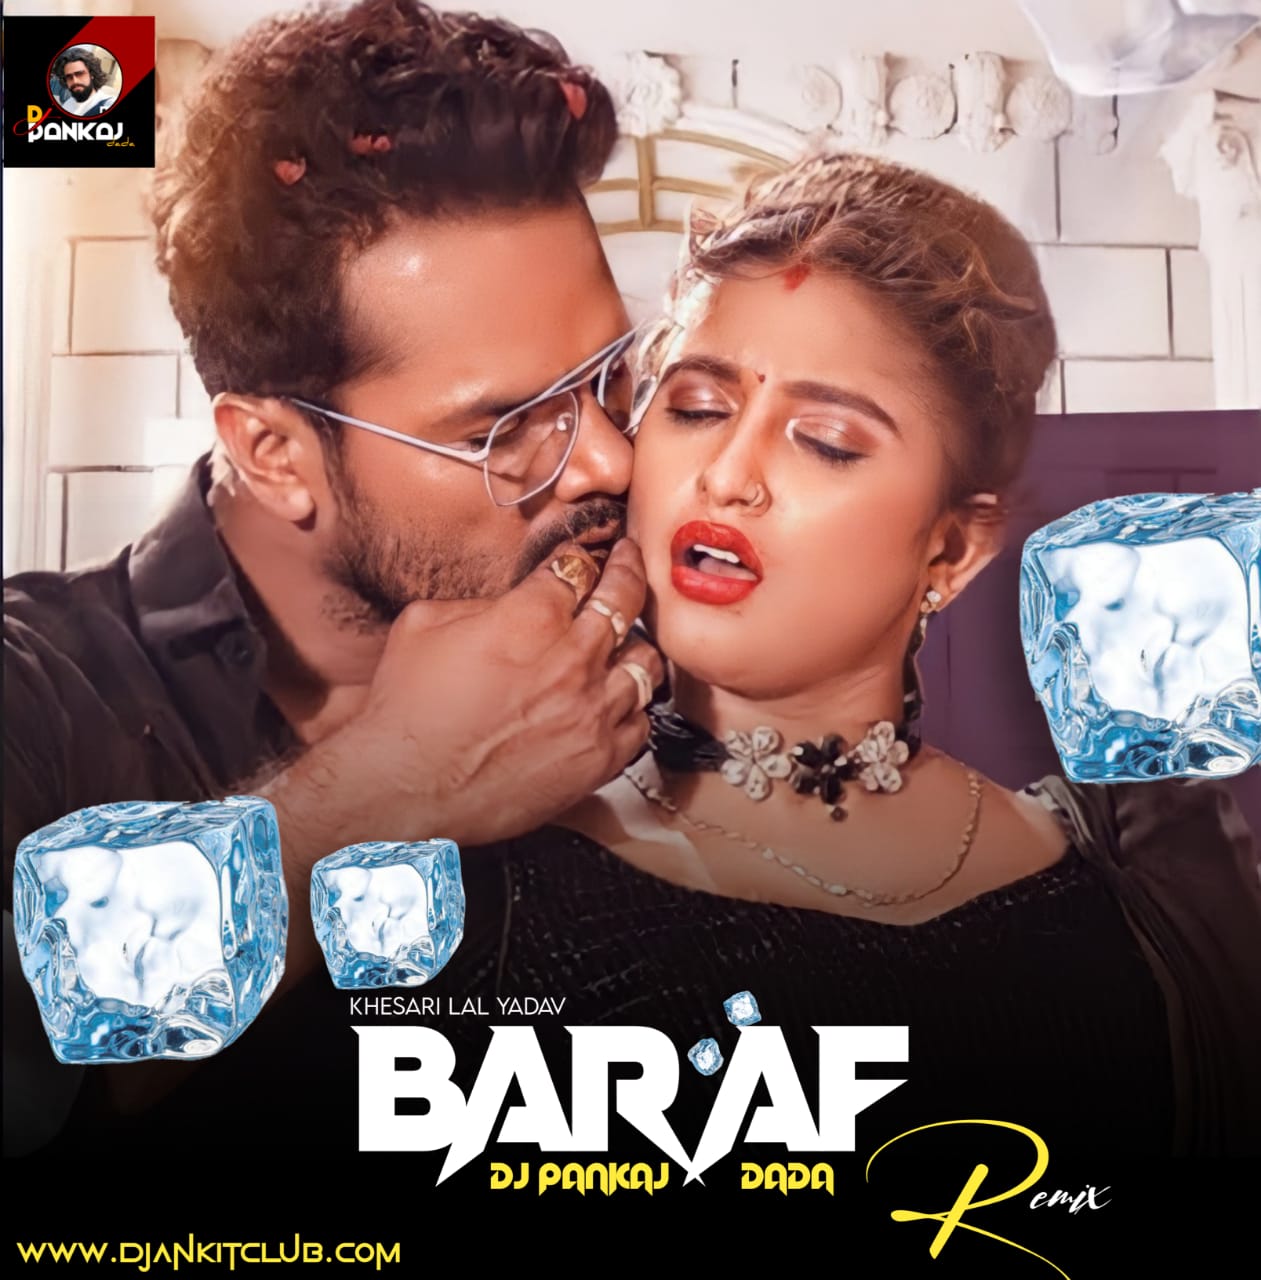 Baraf - Khesari Lal Yadav - (BhojPuri Superhit Jhan Jhan Bass Kahatnak Remix) - Dj Pankaj Dada Tanda